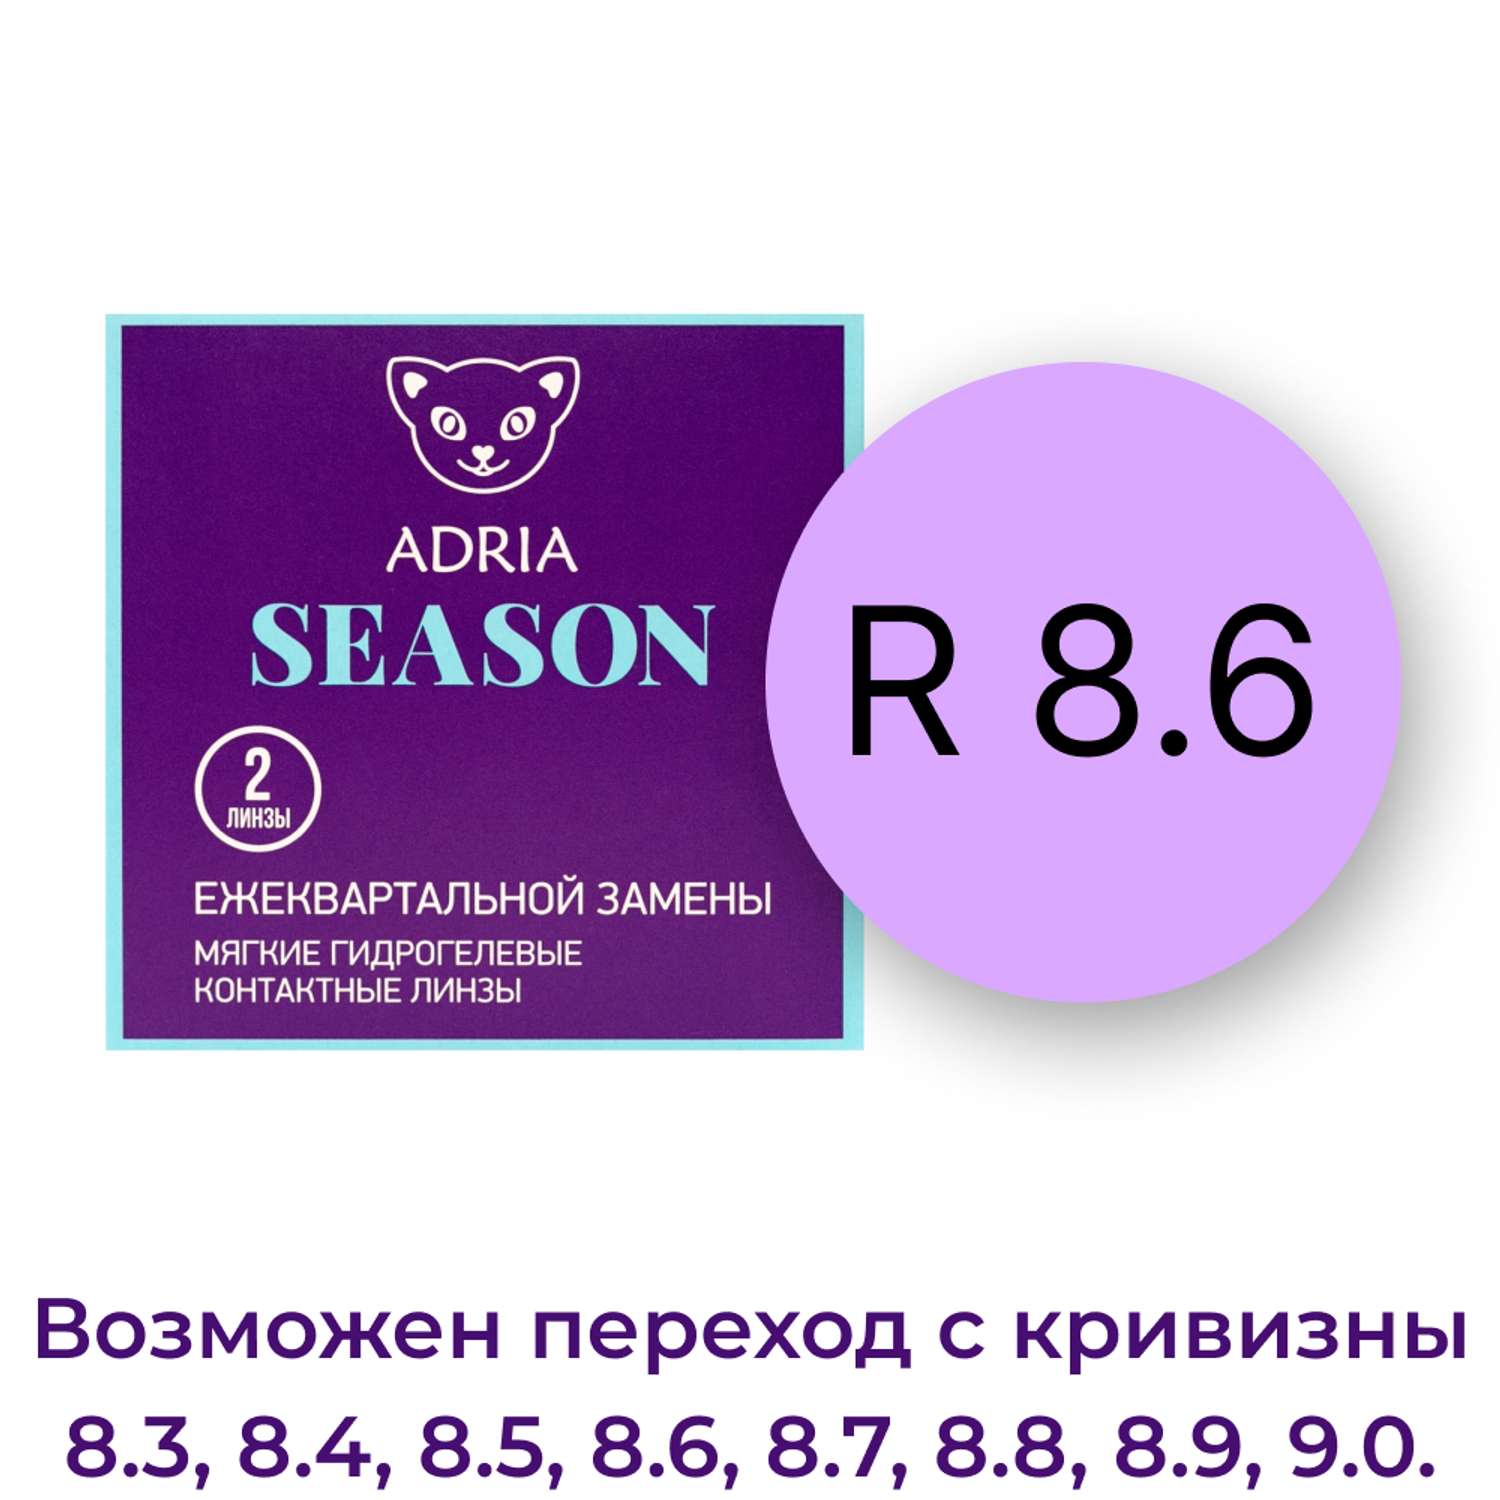 Контактные линзы ADRIA Season 2 линзы R 8.6 -3.50 - фото 3